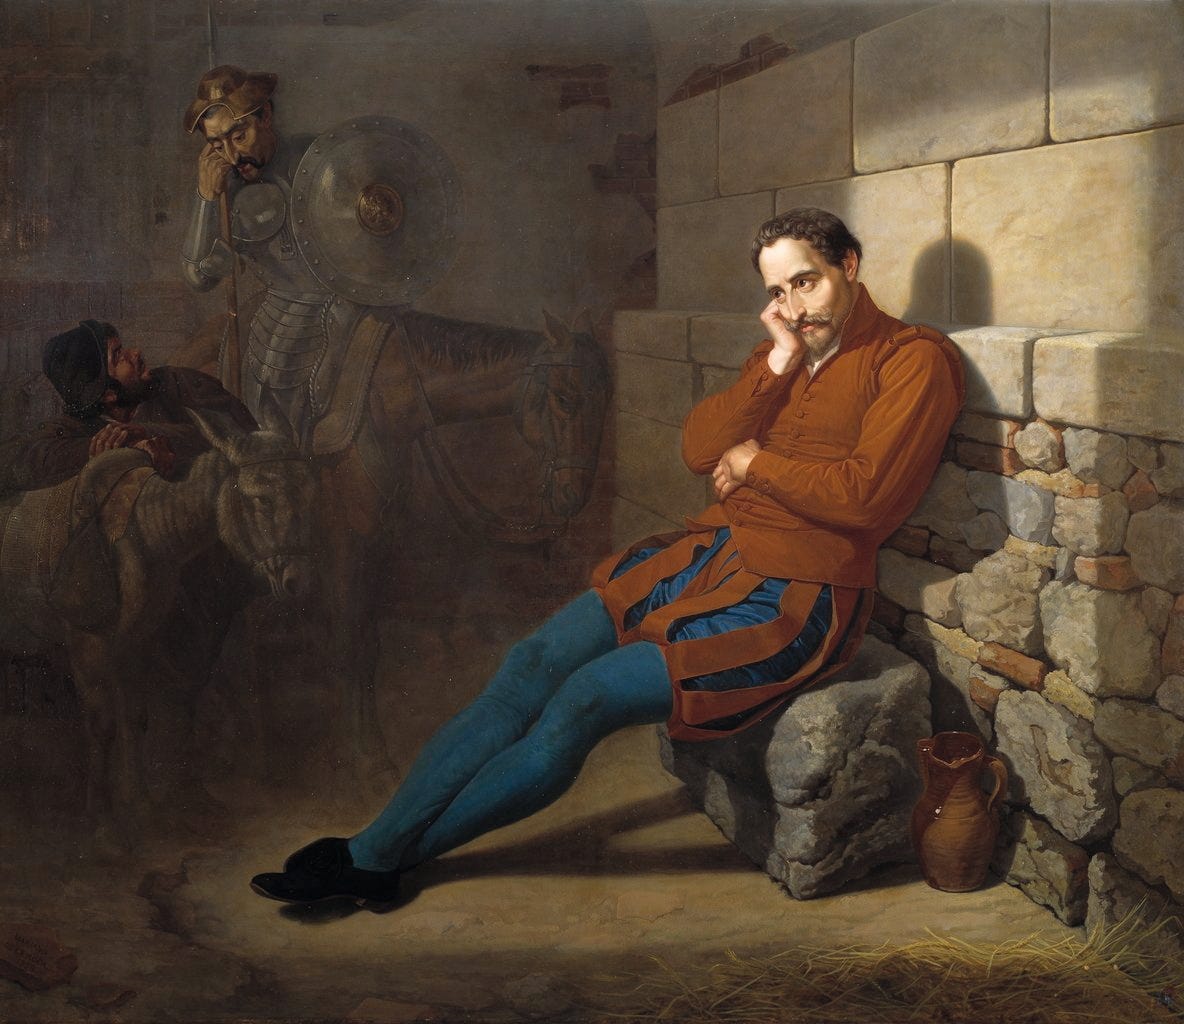 Museo del Prado on X: ""#Cervantes preso, imaginando el Quijote", Mariano  de la Roca y Delgado, 1858 https://t.co/sadnBGqoiO" / X